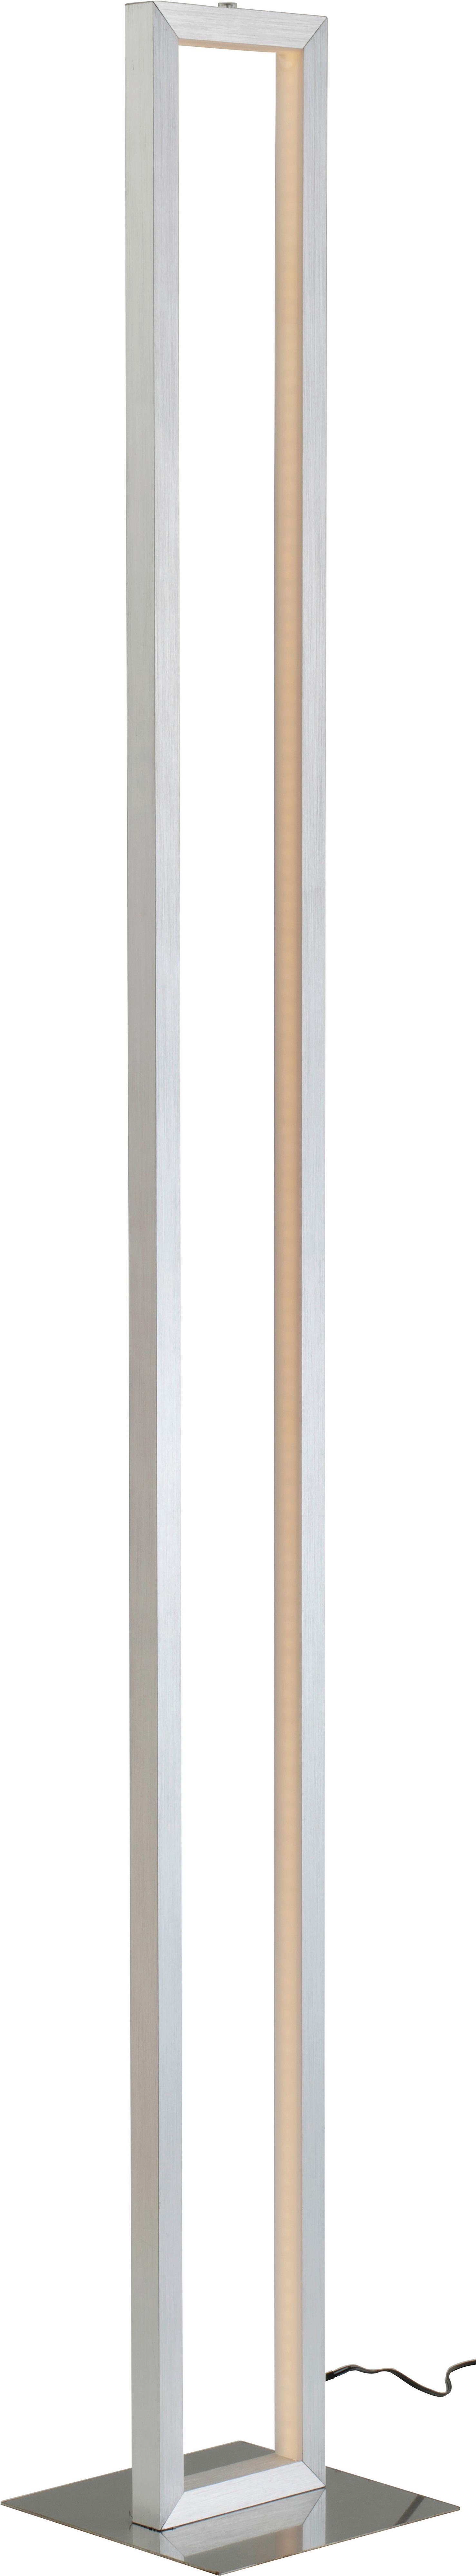 Lampadar LED Erion - culoare nichel/alb, Konventionell, plastic/metal (16/16/120cm) - Premium Living